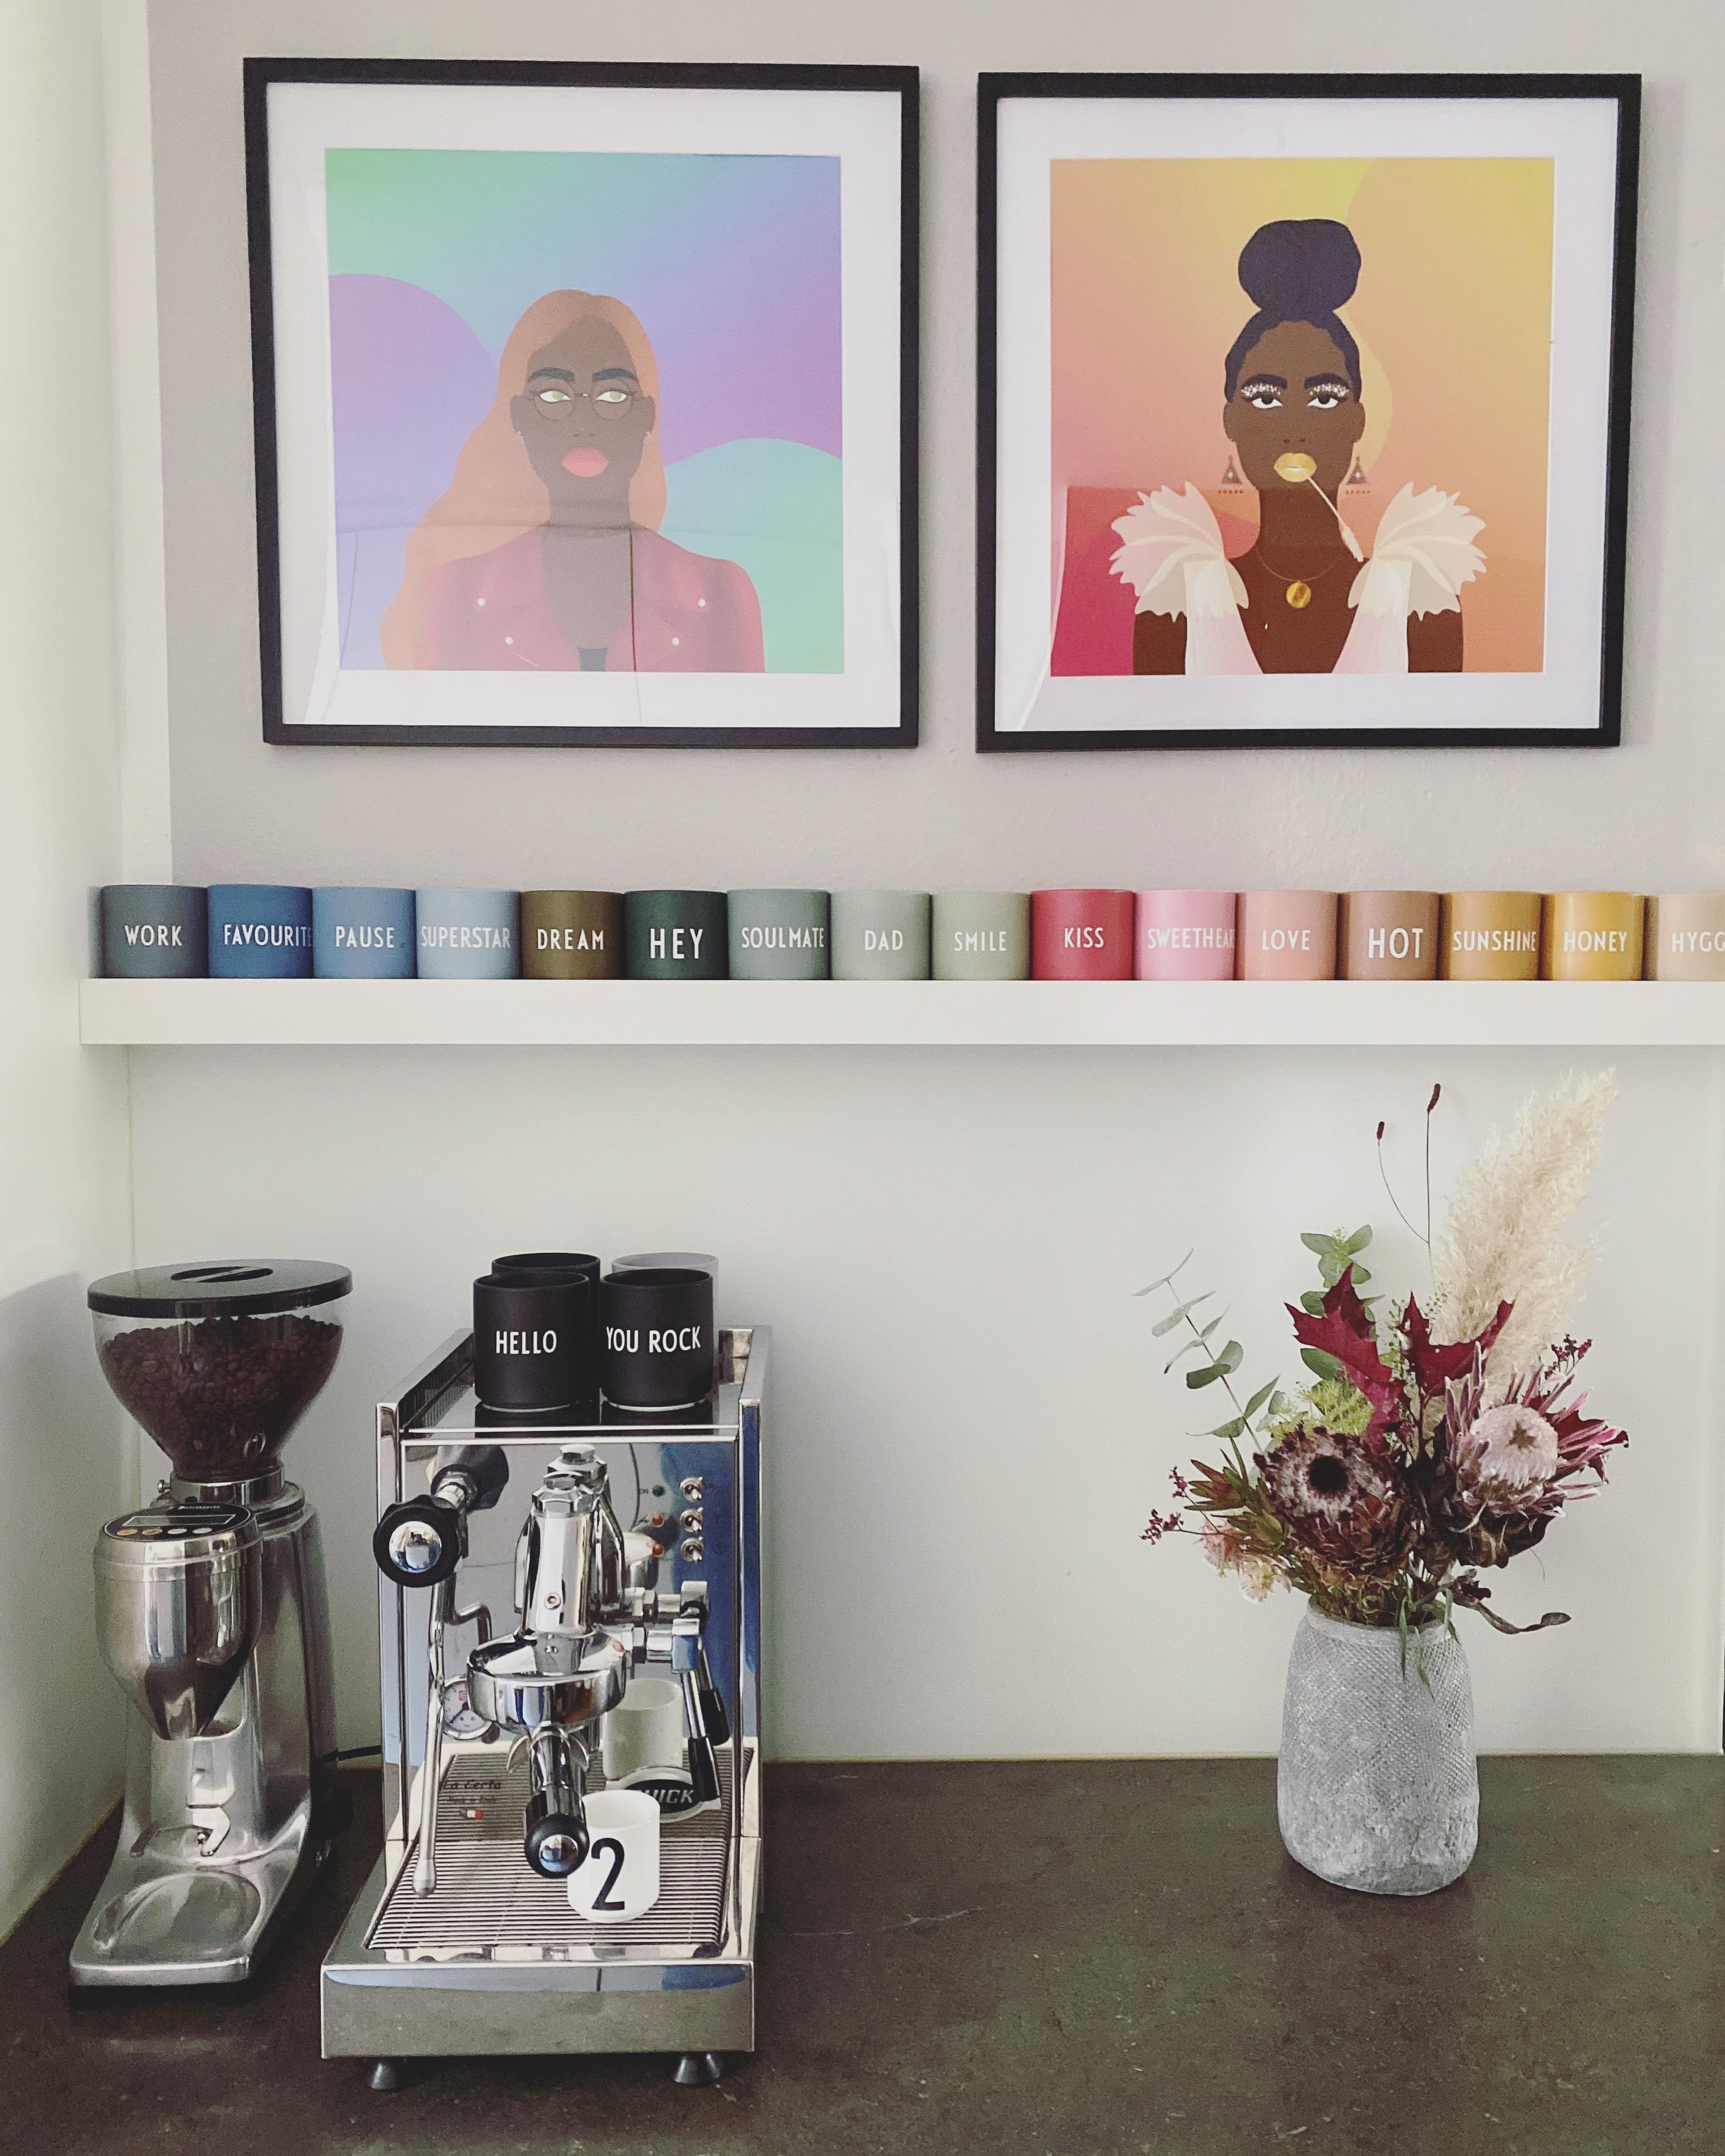 🗝bunt
#Tassensammlung #Sammelleidenschaft #bunt #Farbe #Küchendeko #Kaffee